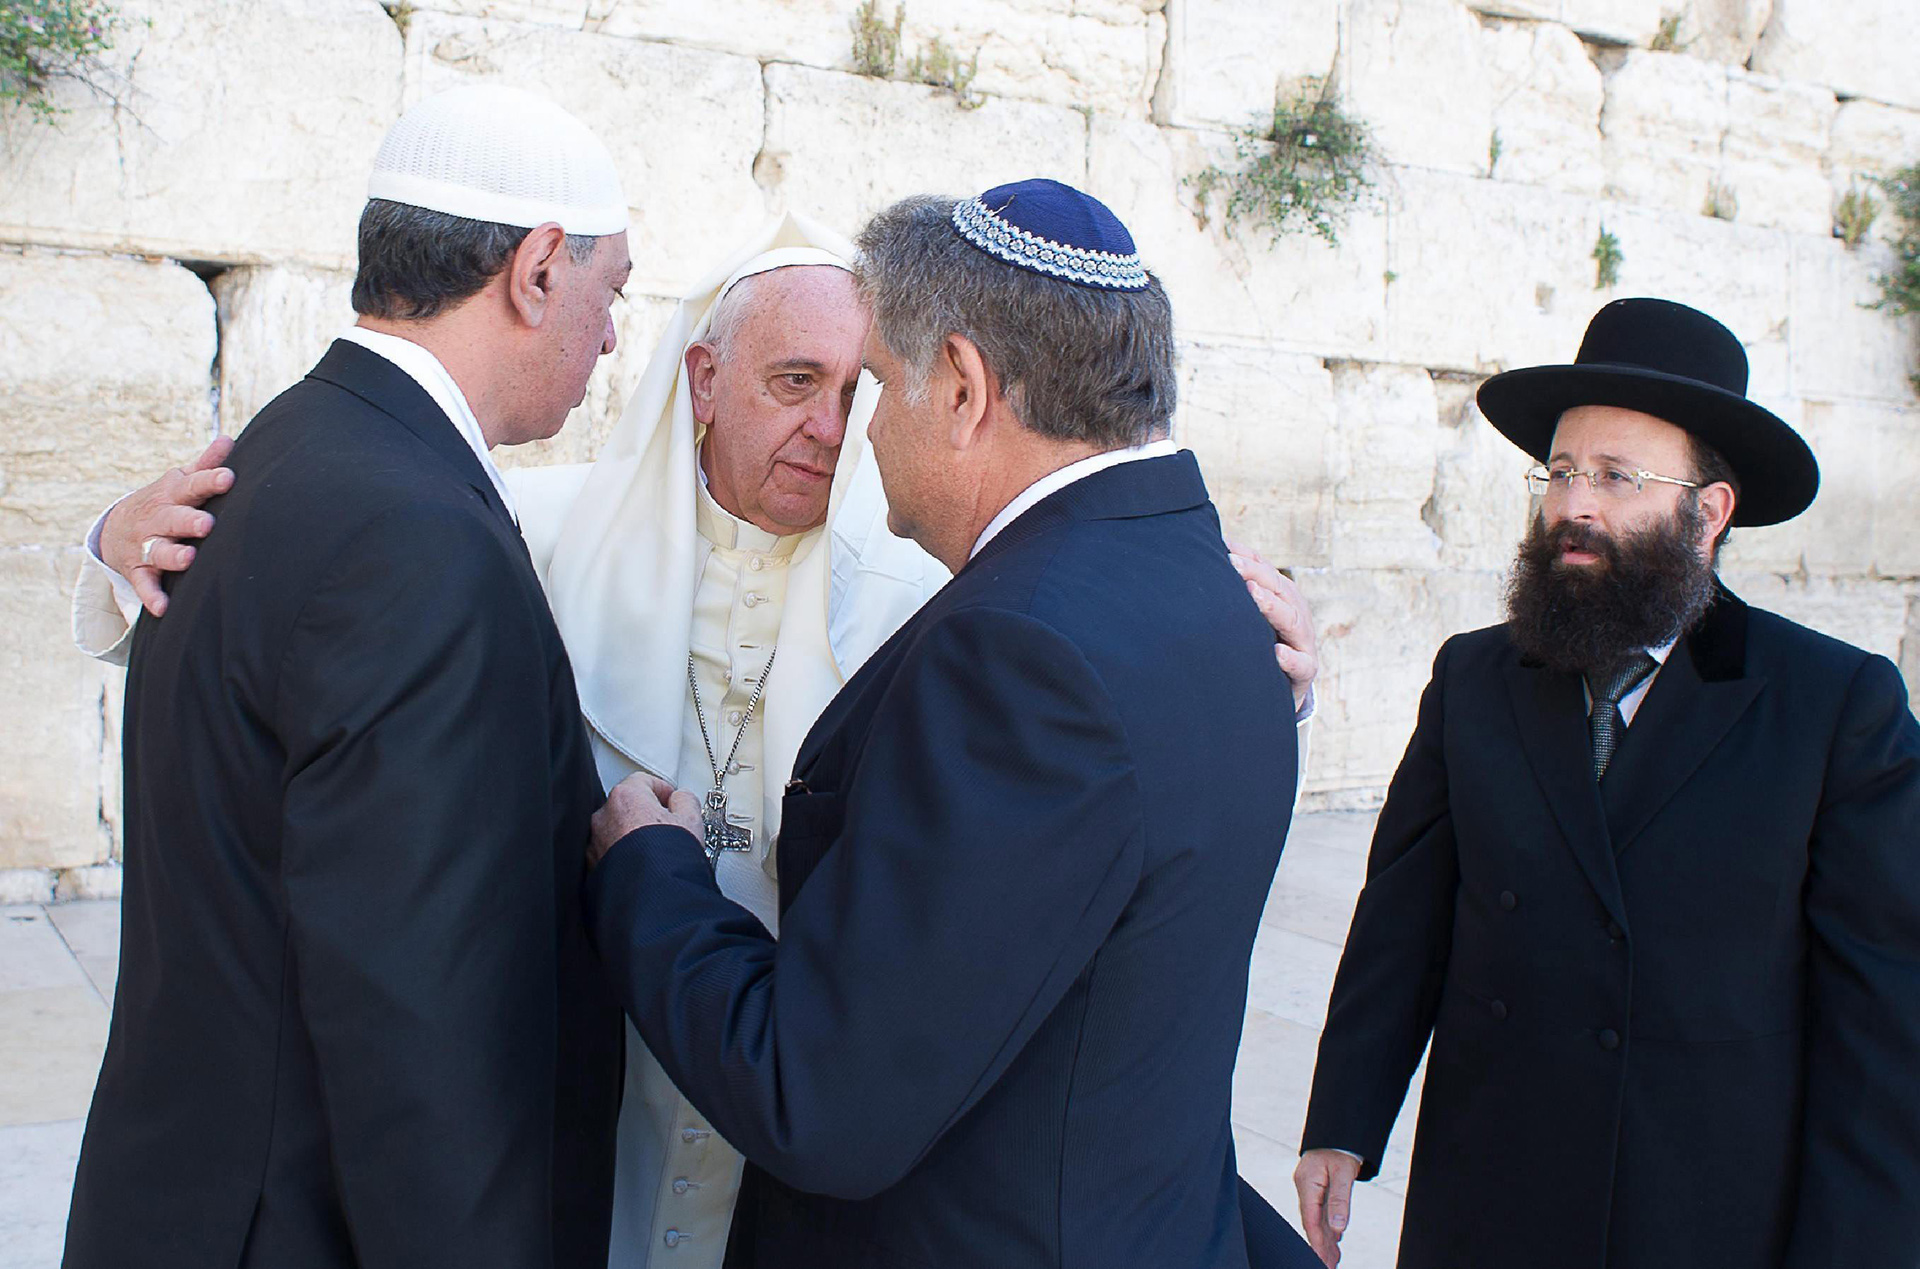 PAP01 JERUSALÉN (ISRAEL) 26/05/2014.- Fotografía de archivo facilitada por L'Osservatore que muestra al papa Francisco (2ºizda) conversando con sus amigos argentinos el rabino Abraham Skorka (2ºdcha) y el líder musulmán Omar Abud (izda) junto al rabino del Muro de las Lamentaciones, Shmuel Rabinovitz (dcha), en Jerusalén (Israel) hoy, lunes 26 de mayo de 2014. EFE/Osservatore Romano